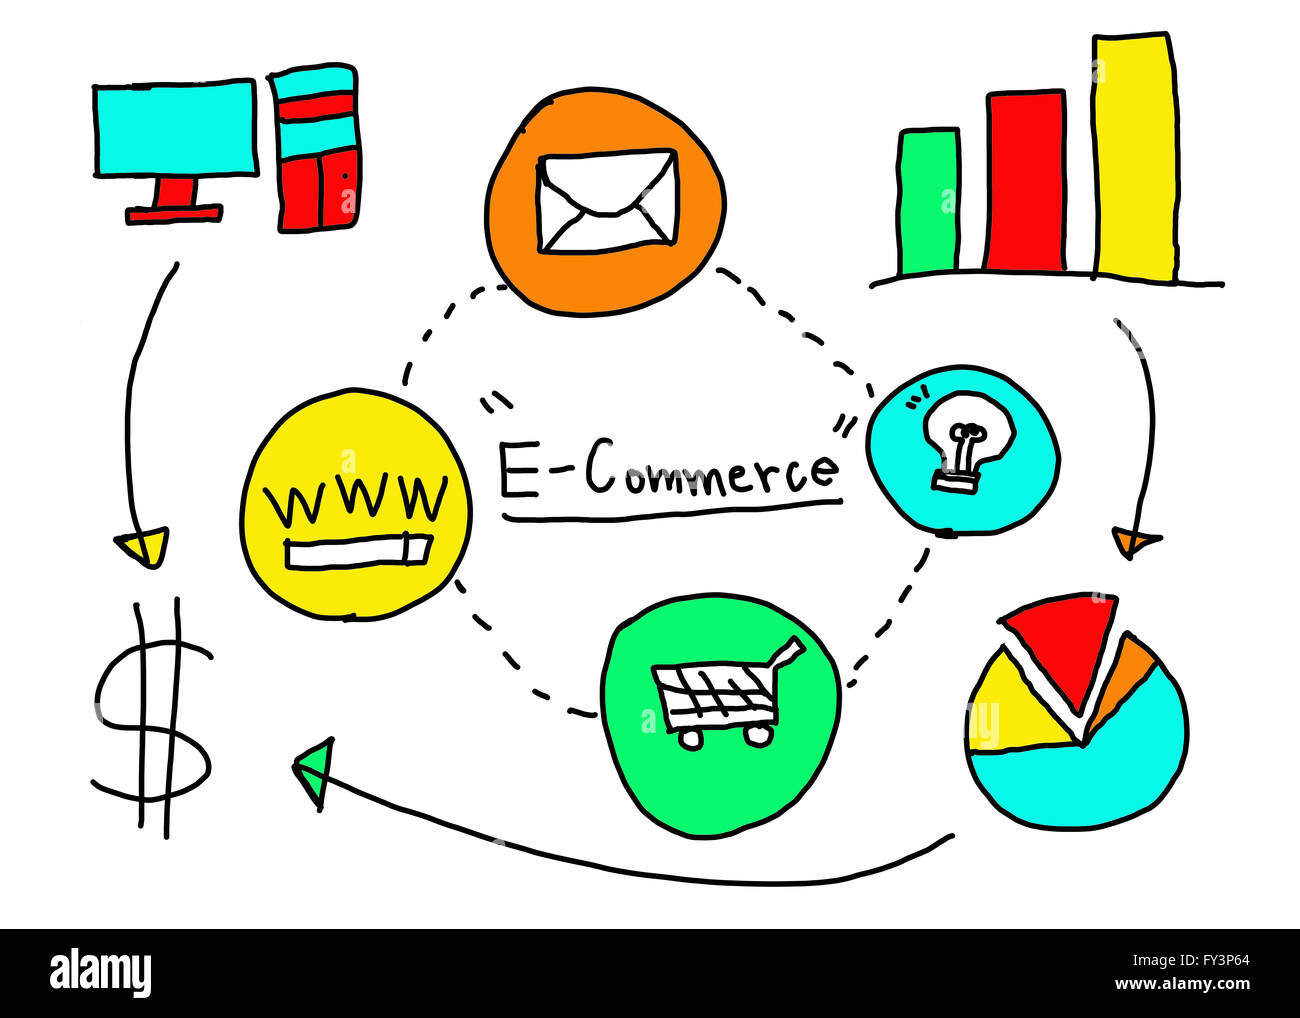 Il concetto di Business E-Commerce nel disegno a mano idea per il commercio elettronico. Foto Stock